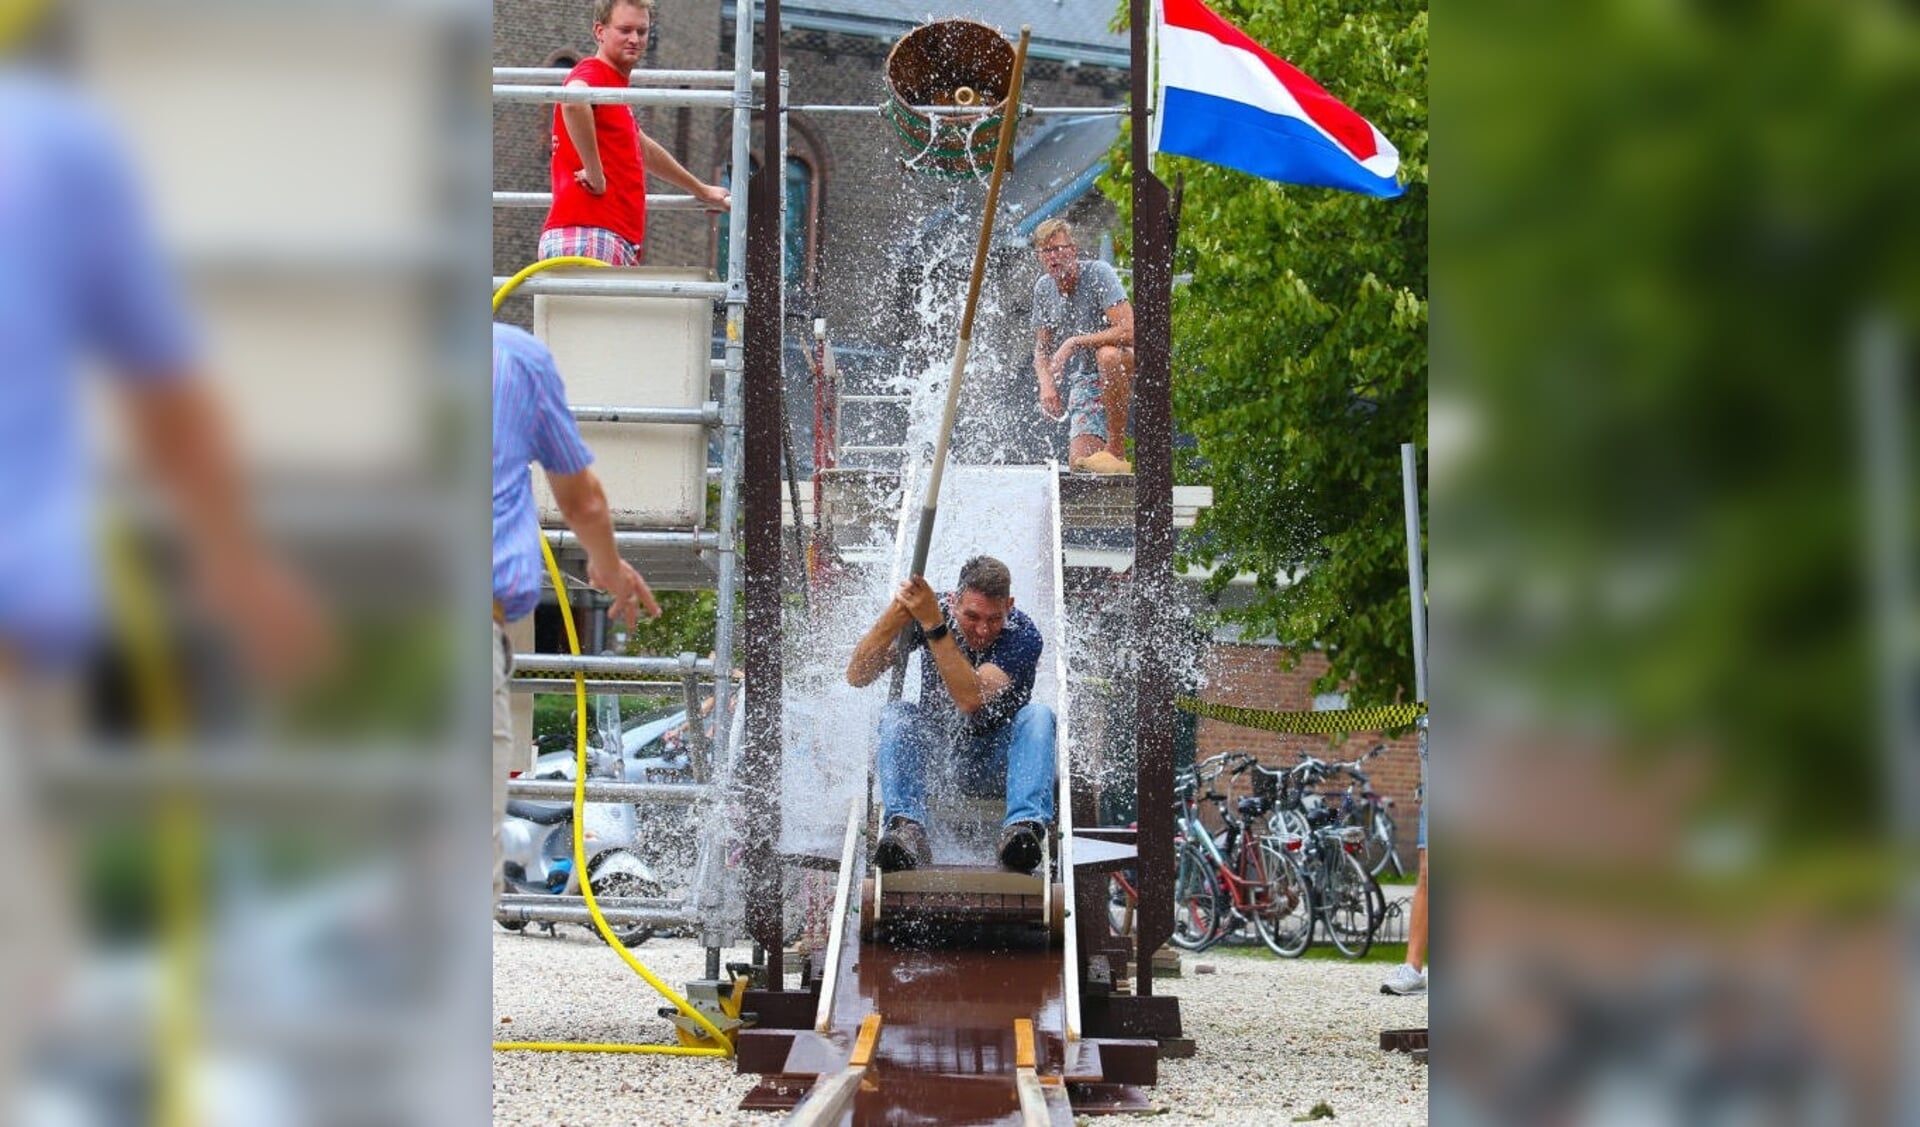 De Nederlands kampioen tonnetje steken. | Foto: Mischa Keemink.